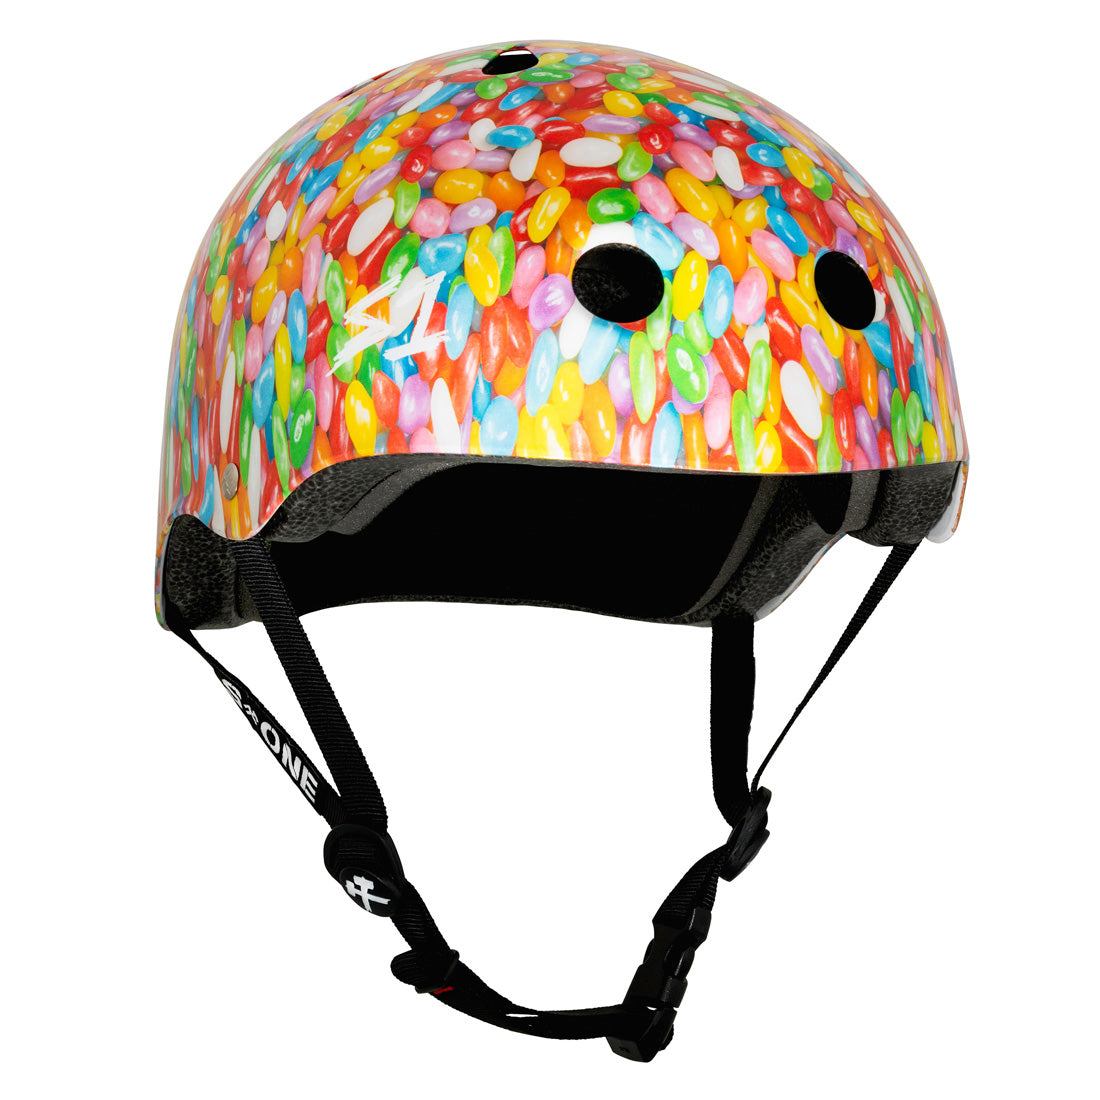 S-One Lifer Helmet - Jelly Beans Gloss Helmets